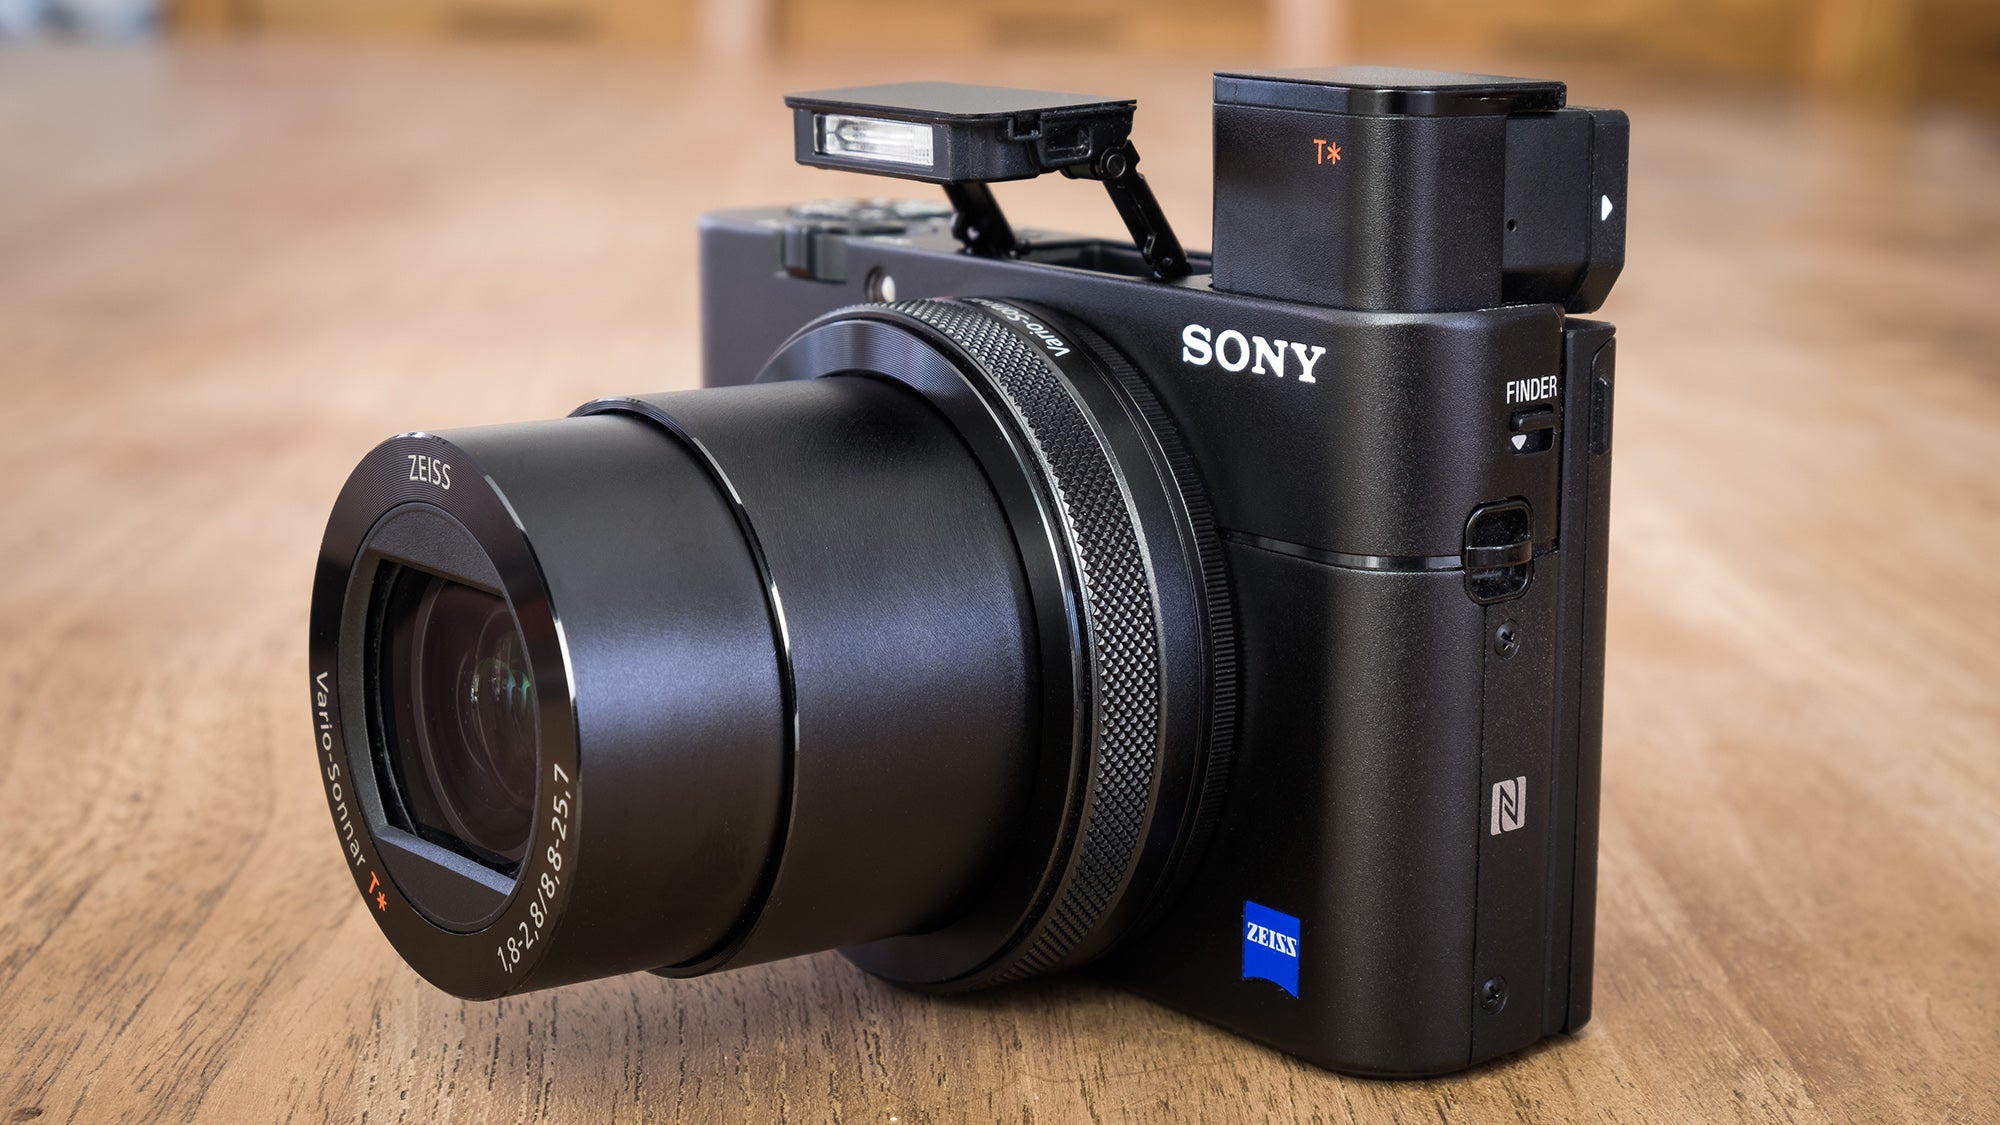 Sony Cyber-shot RX100 V : Excellence compacte haut de gamme